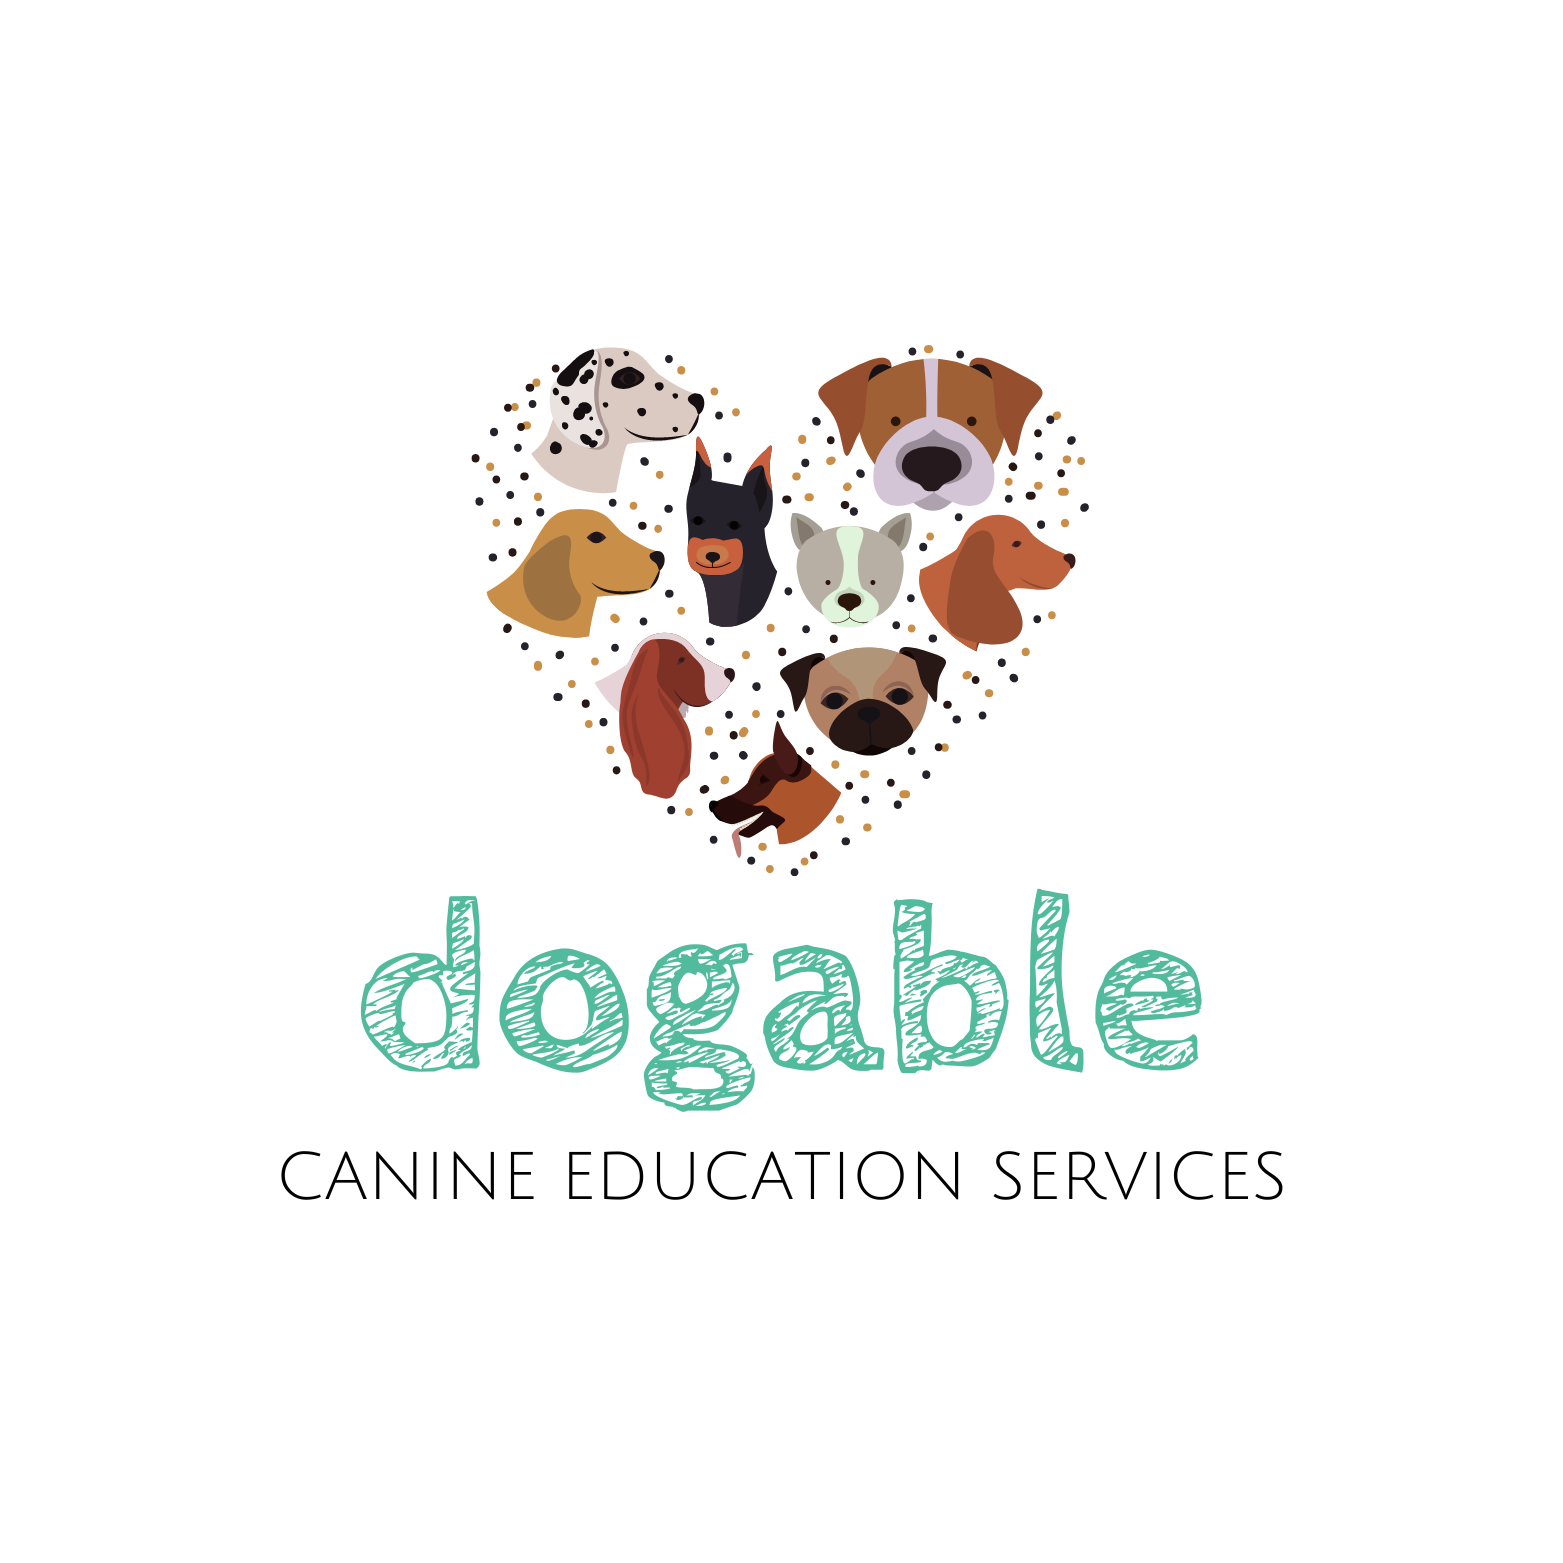 Dogable Dog Training logo